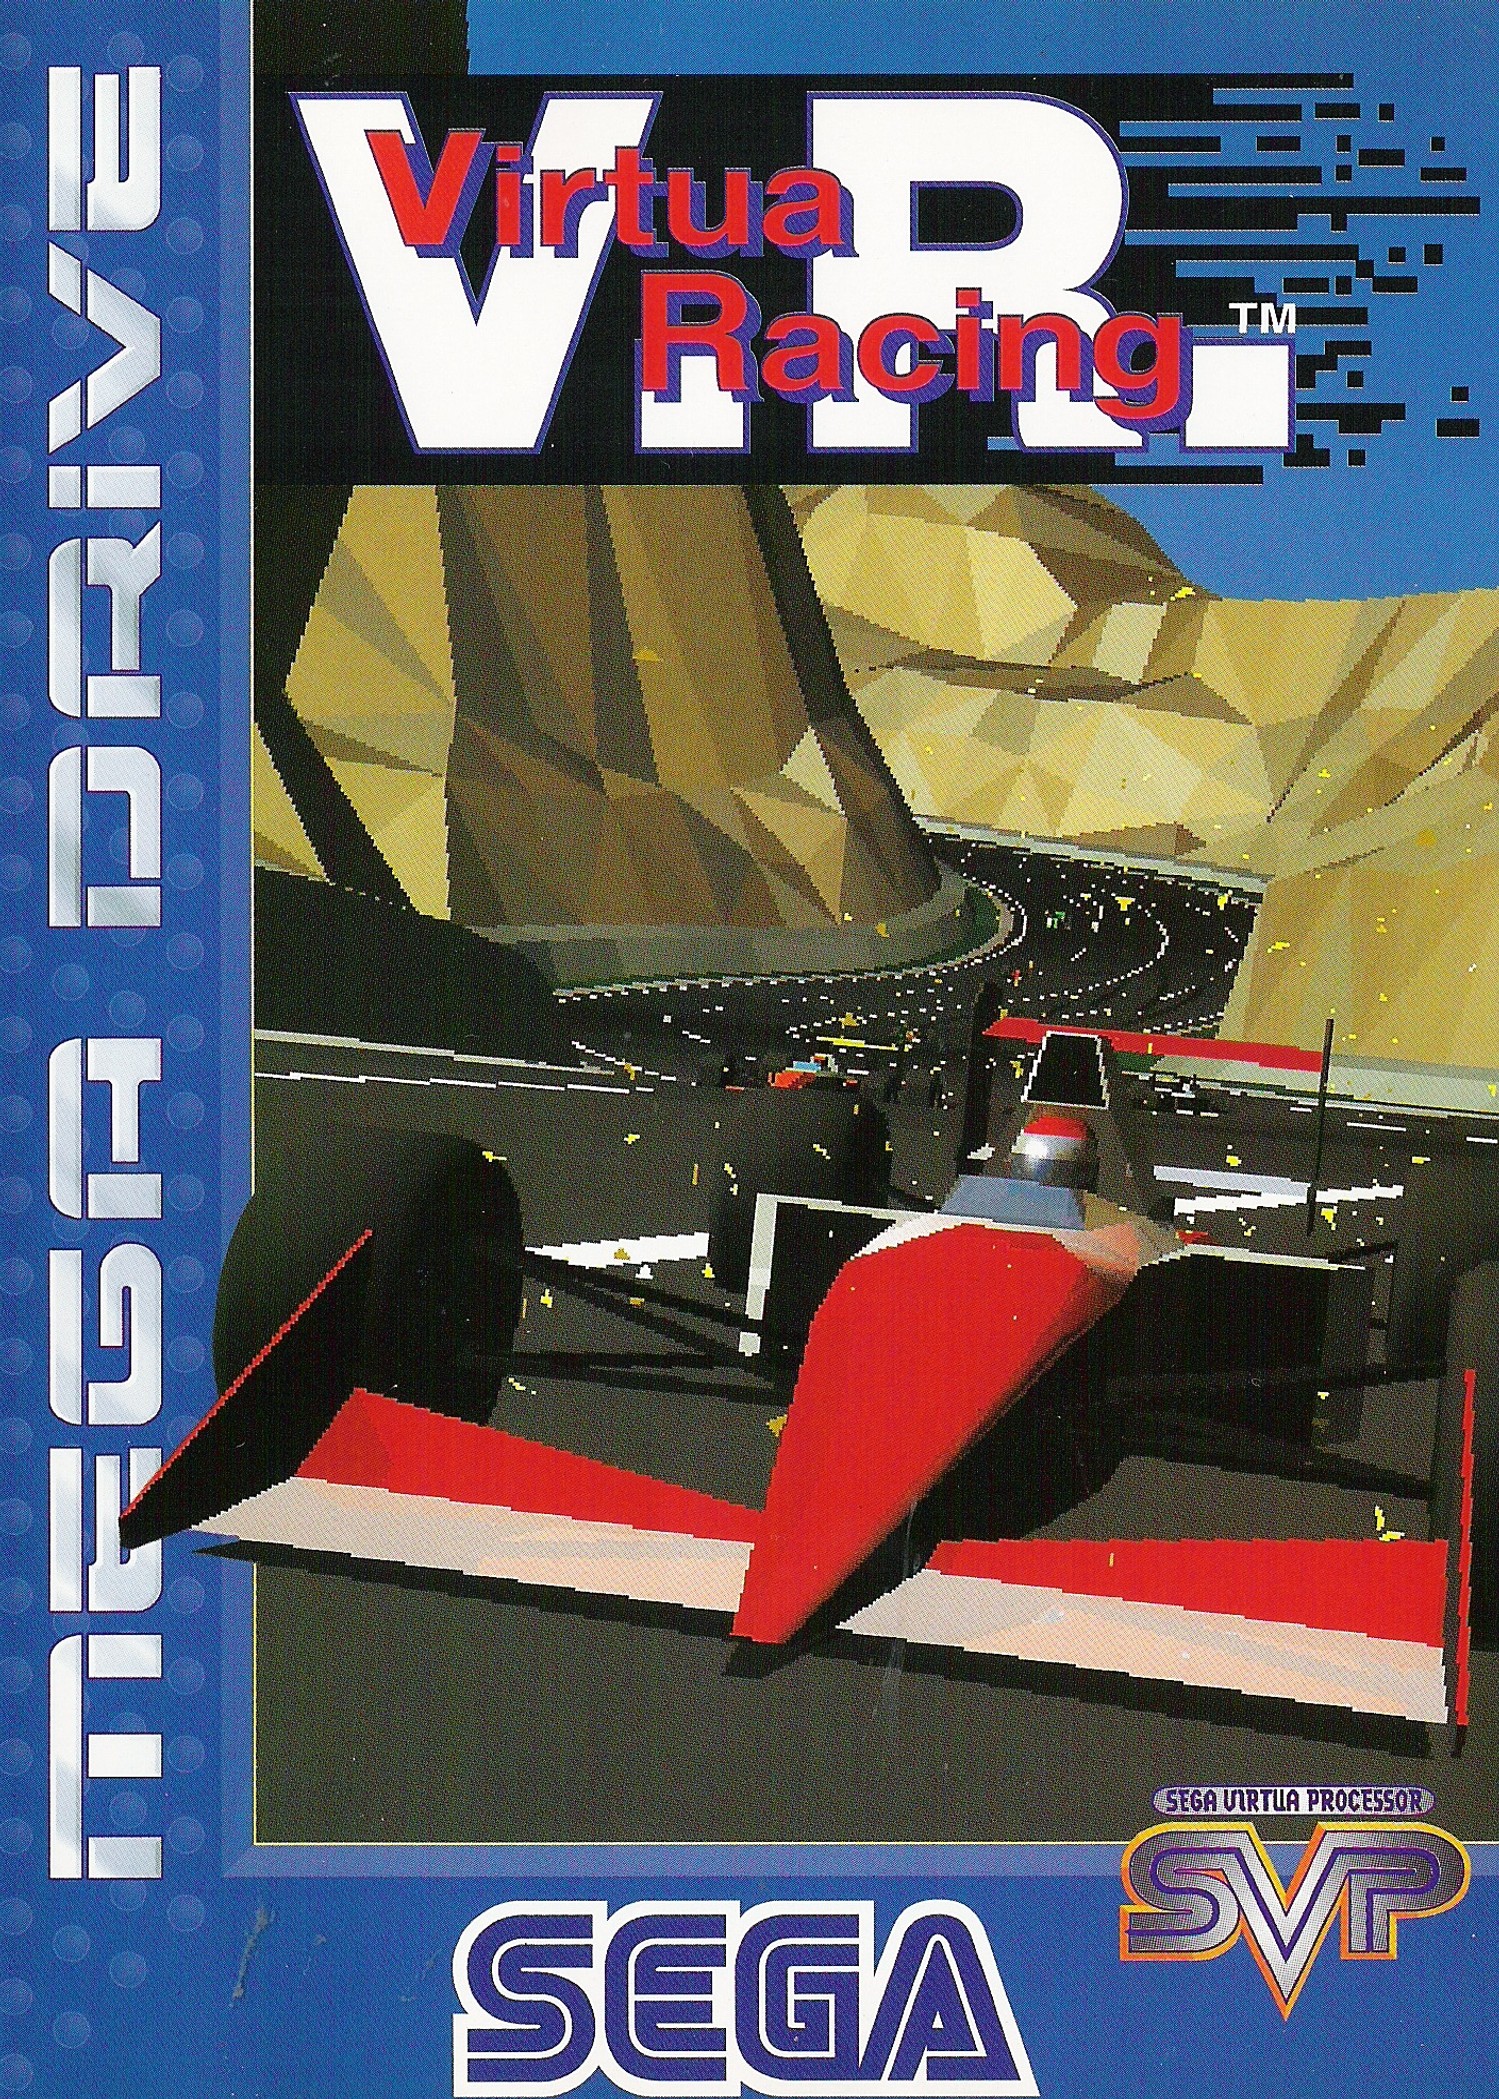 'Virtua Racing'